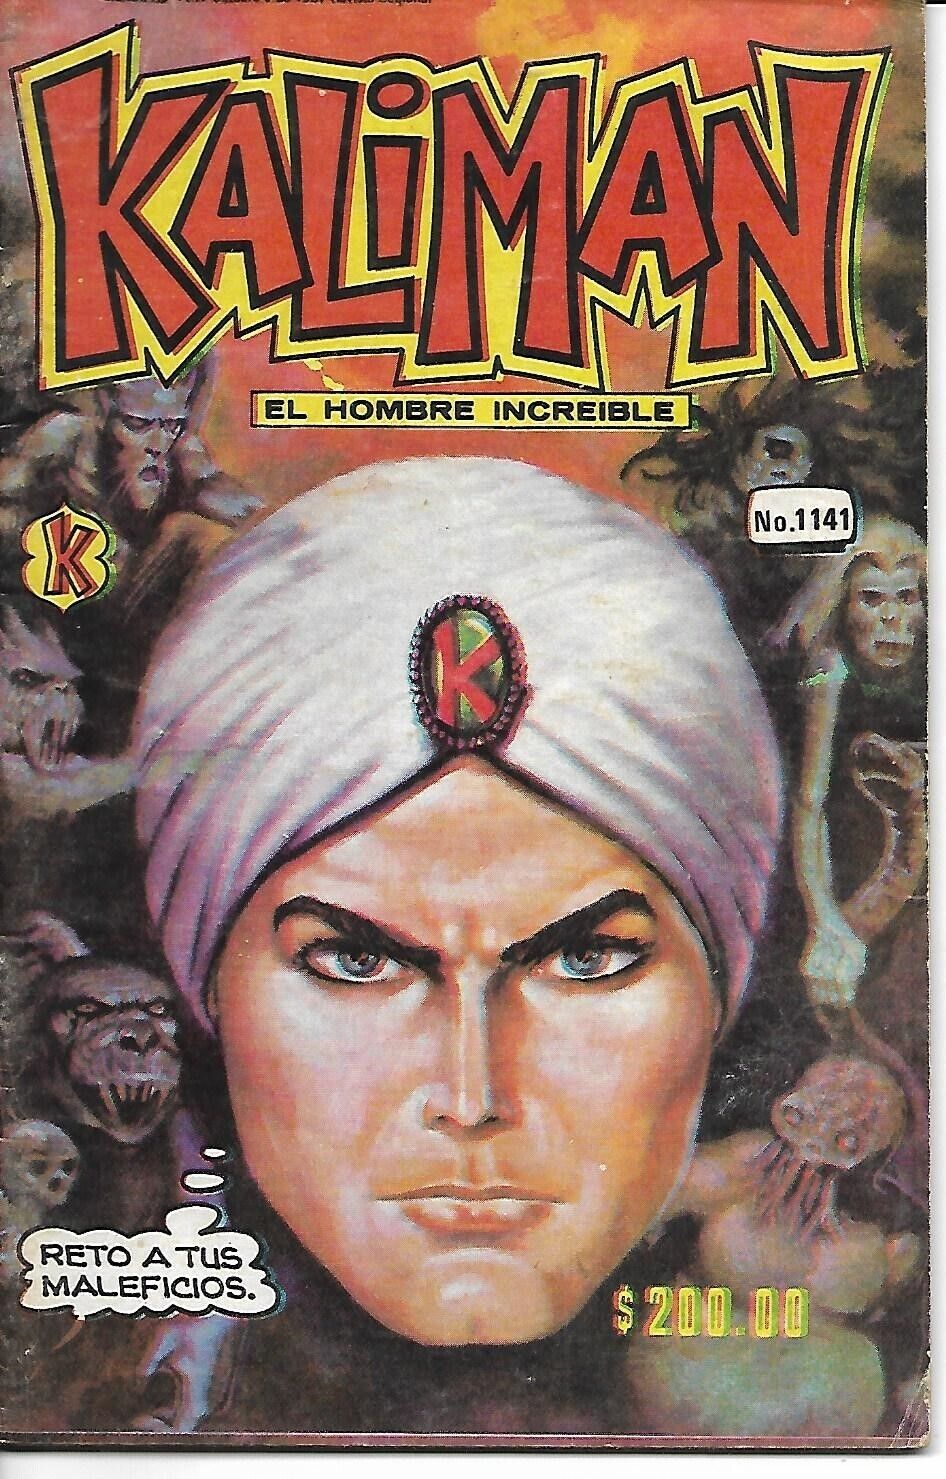 Kaliman El Hombre Increible #1141 - Octubre 9, 1987